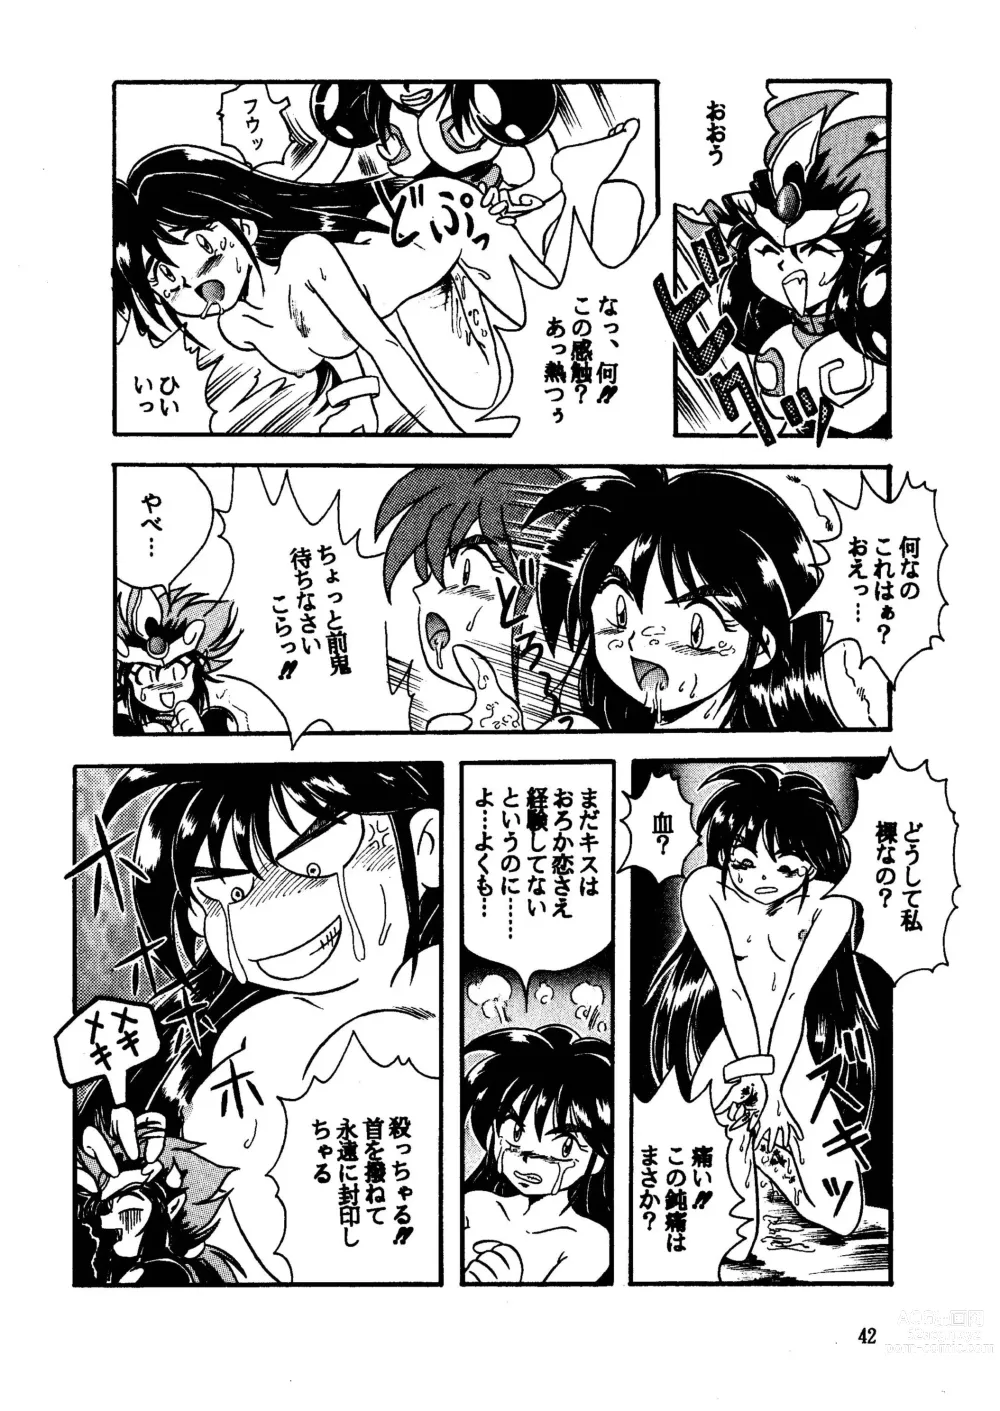 Page 42 of doujinshi GALTECH